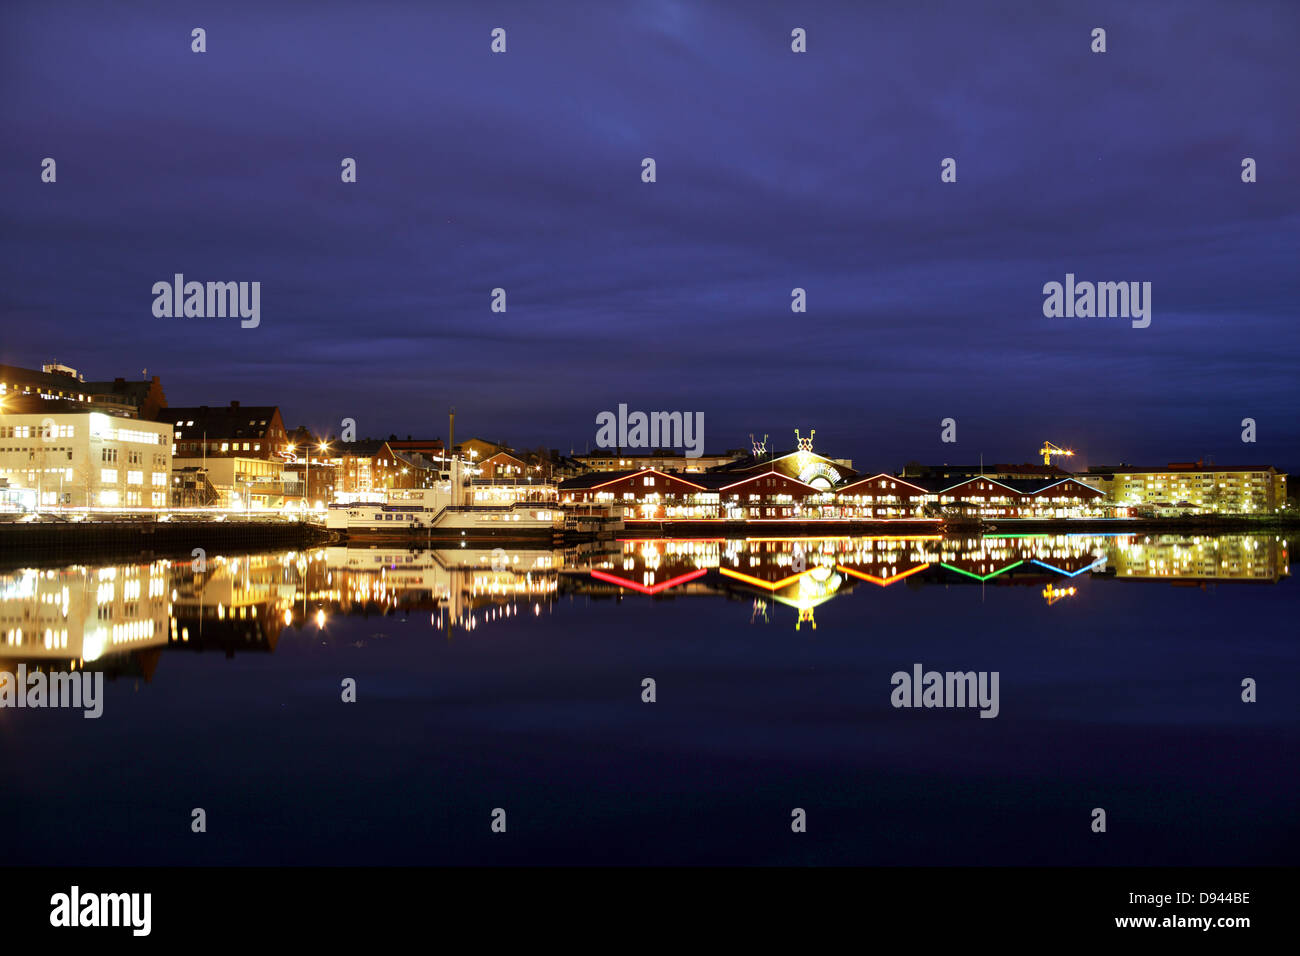 Beleuchtete Gebäude am Hafen im Wasser reflektiert Stockfoto